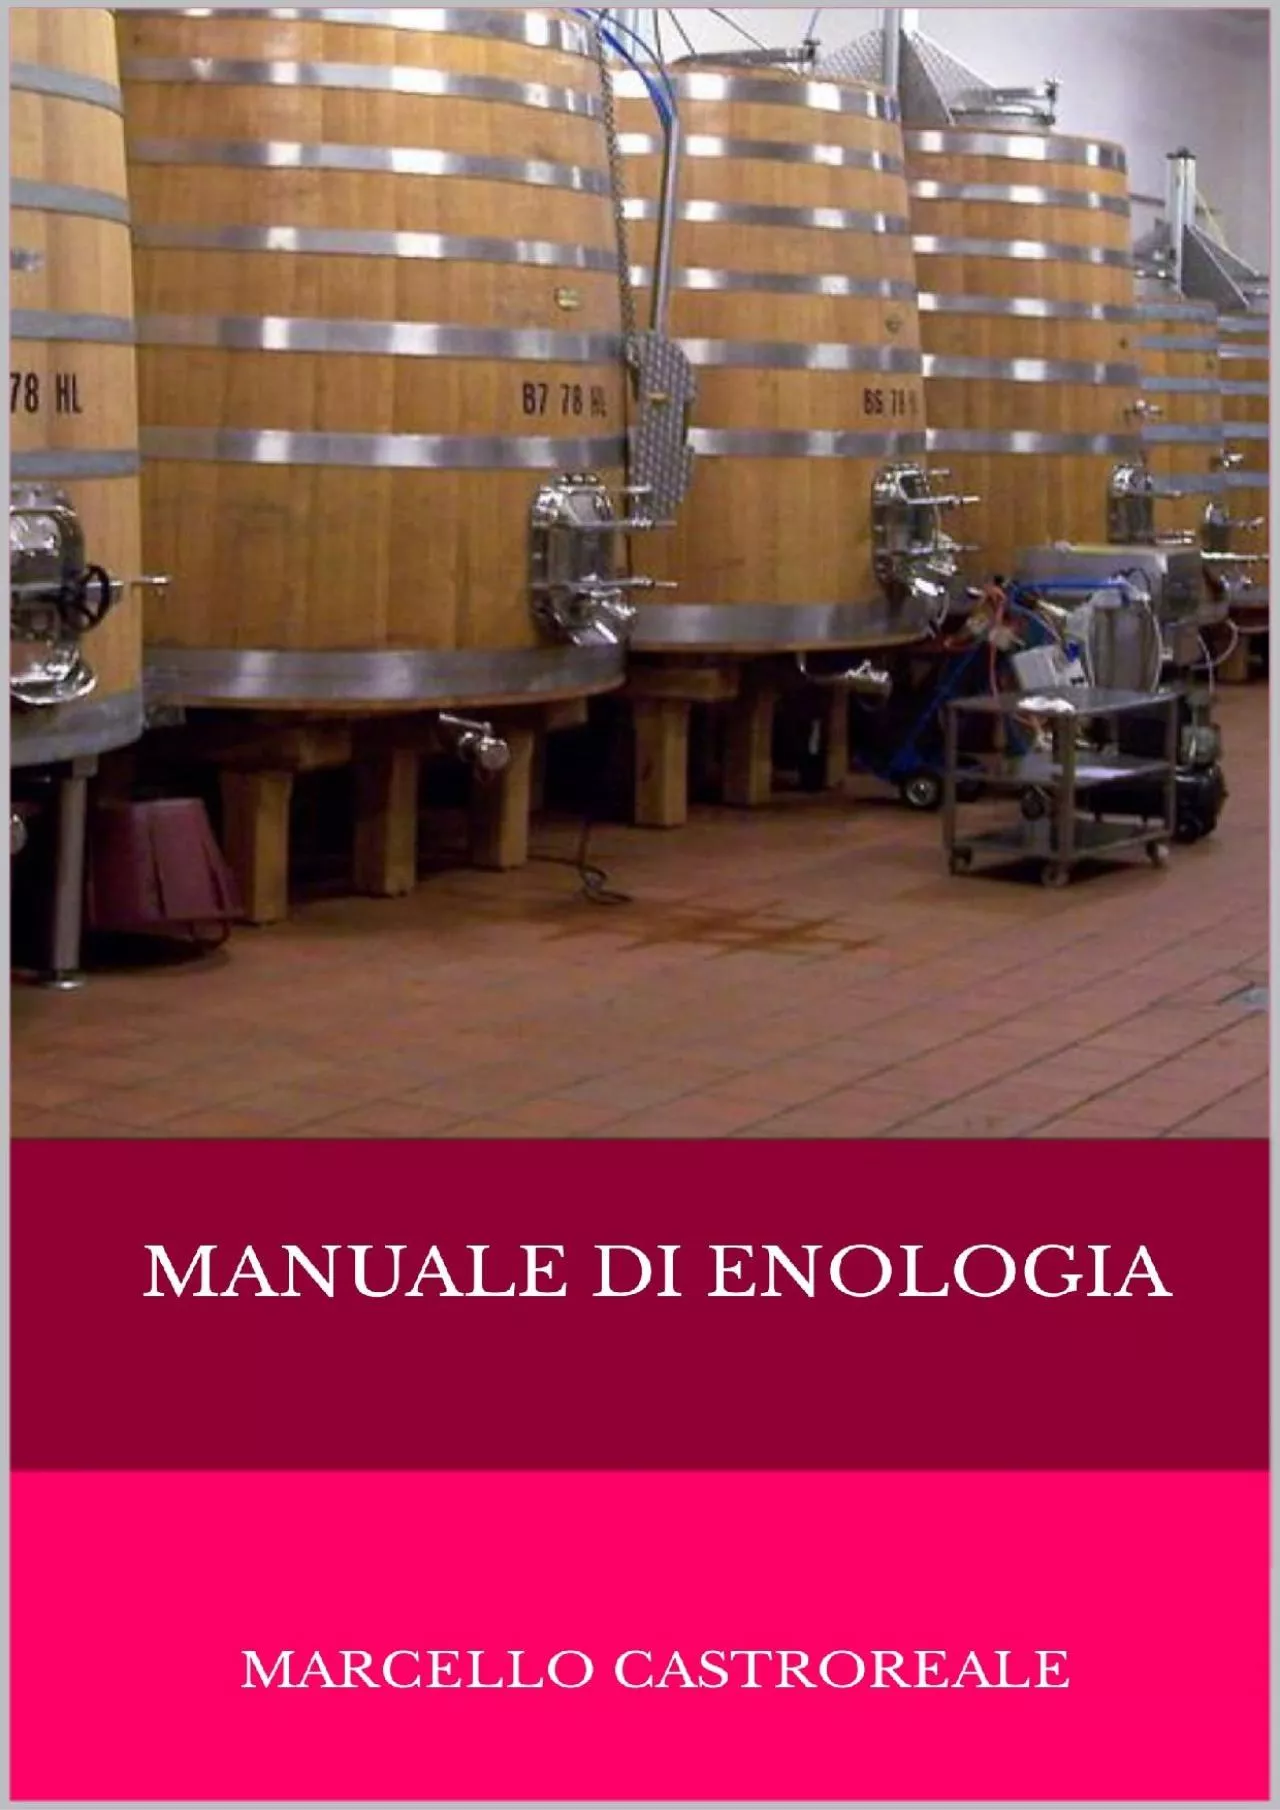 [DOWNLOAD] Manuale di enologia: Marcello Castroreale Marcello Castroreale VINI, DISTILLATI